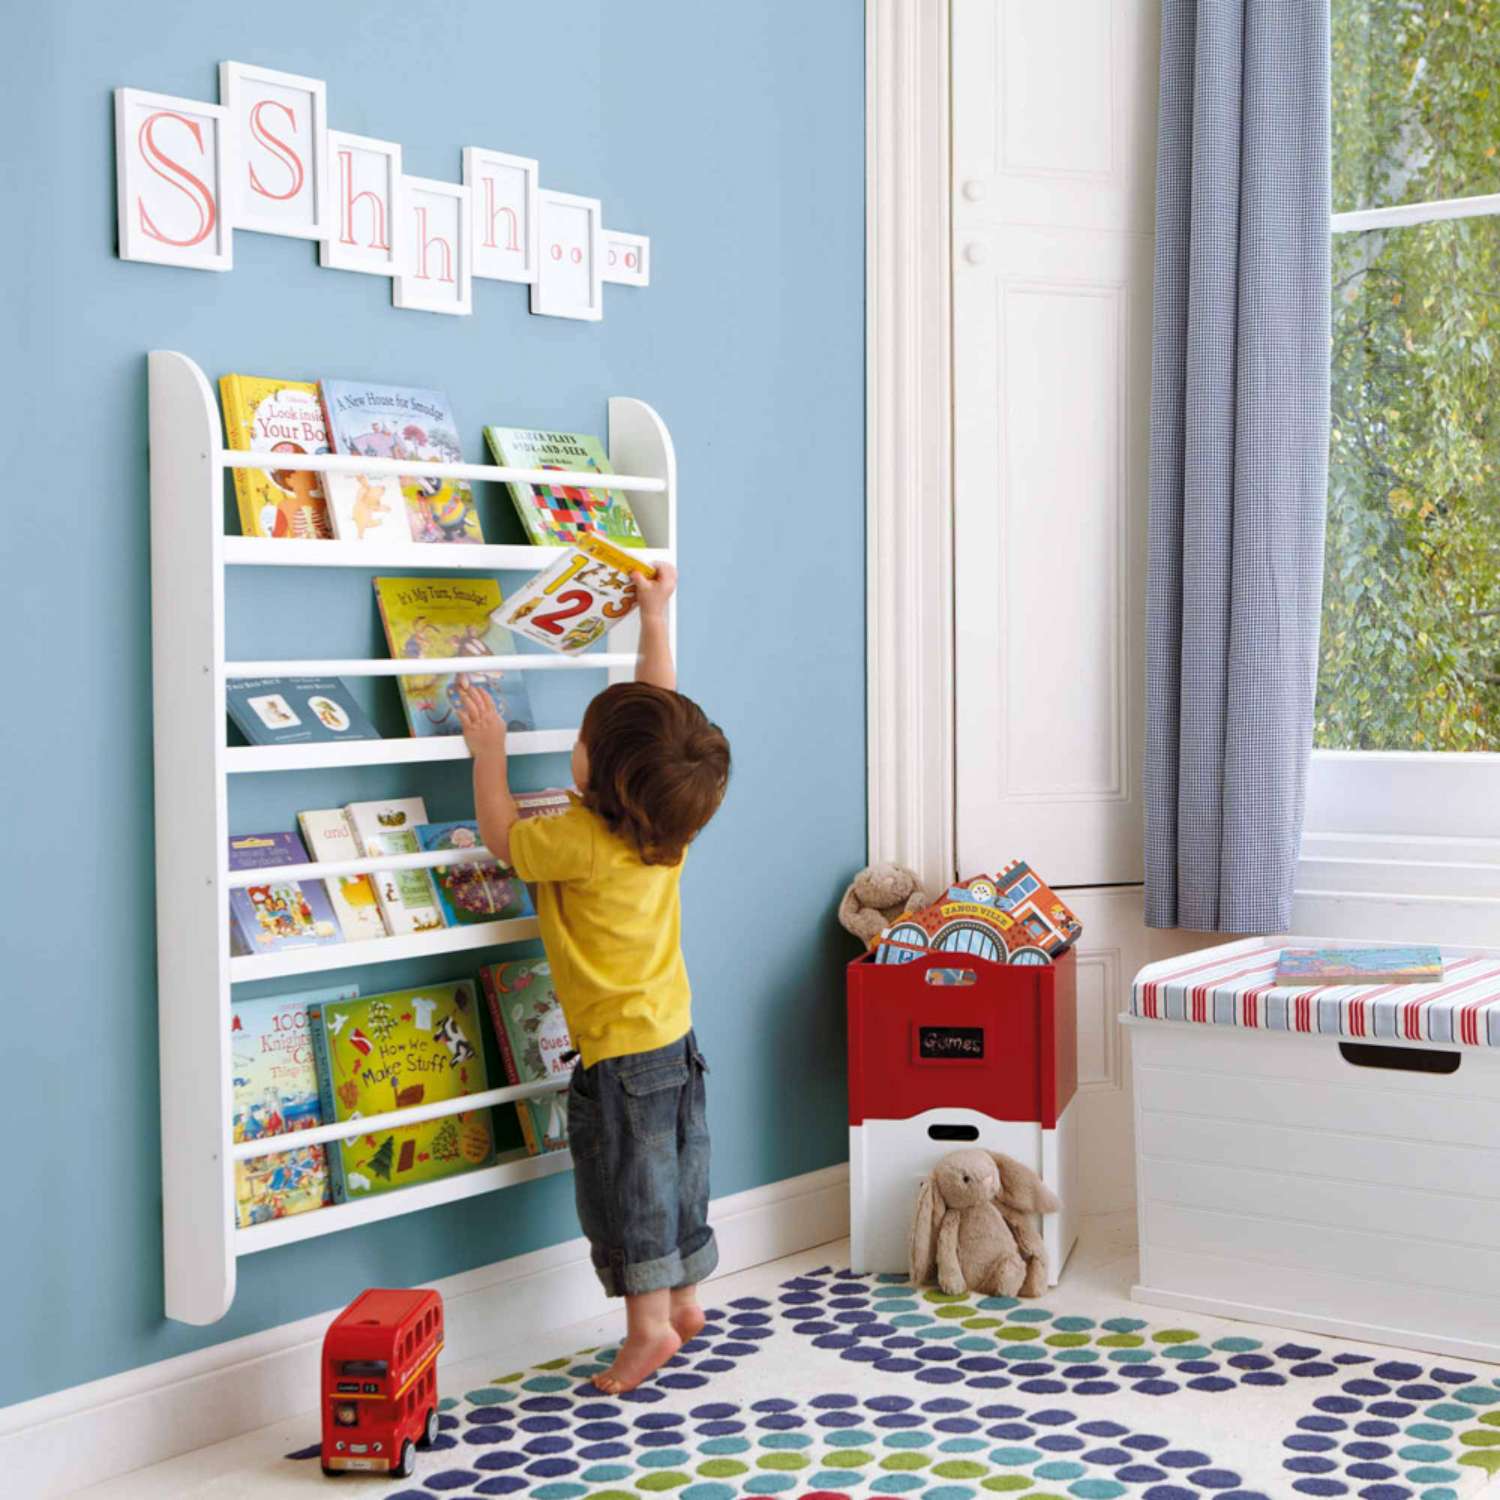 Vuelta al cole: estanterías infantiles para organizar sus libros y juguetes  en una preciosa habitación